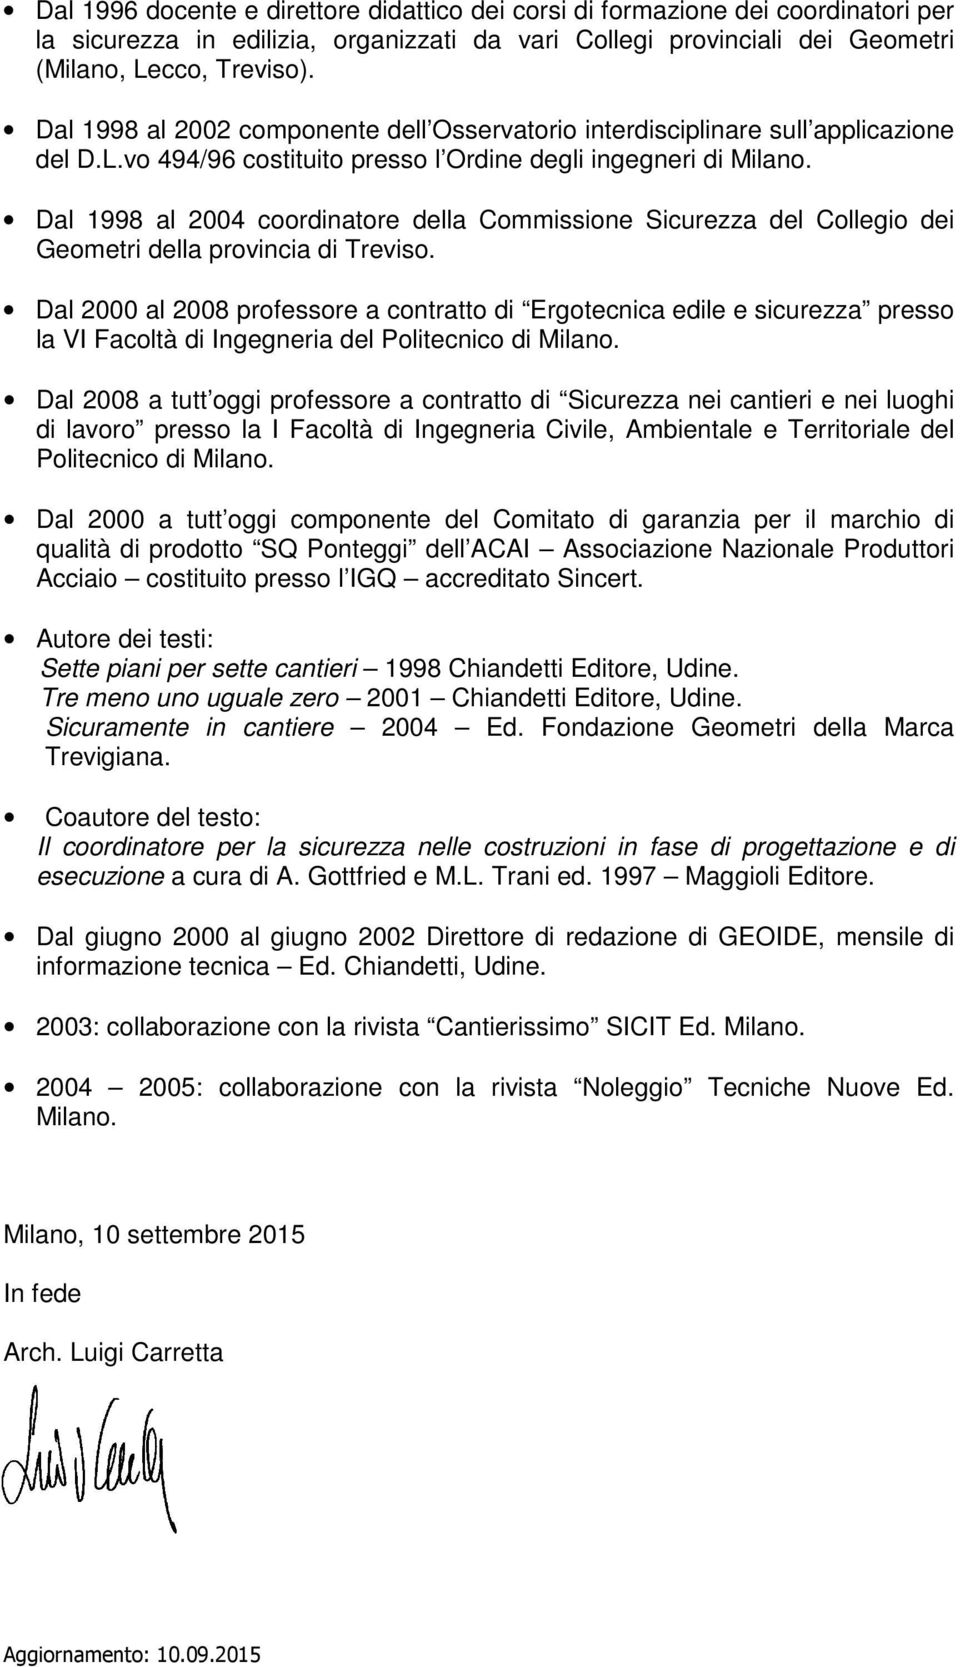 Dal 1998 al 2004 coordinatore della Commissione Sicurezza del Collegio dei Geometri della provincia di Treviso.